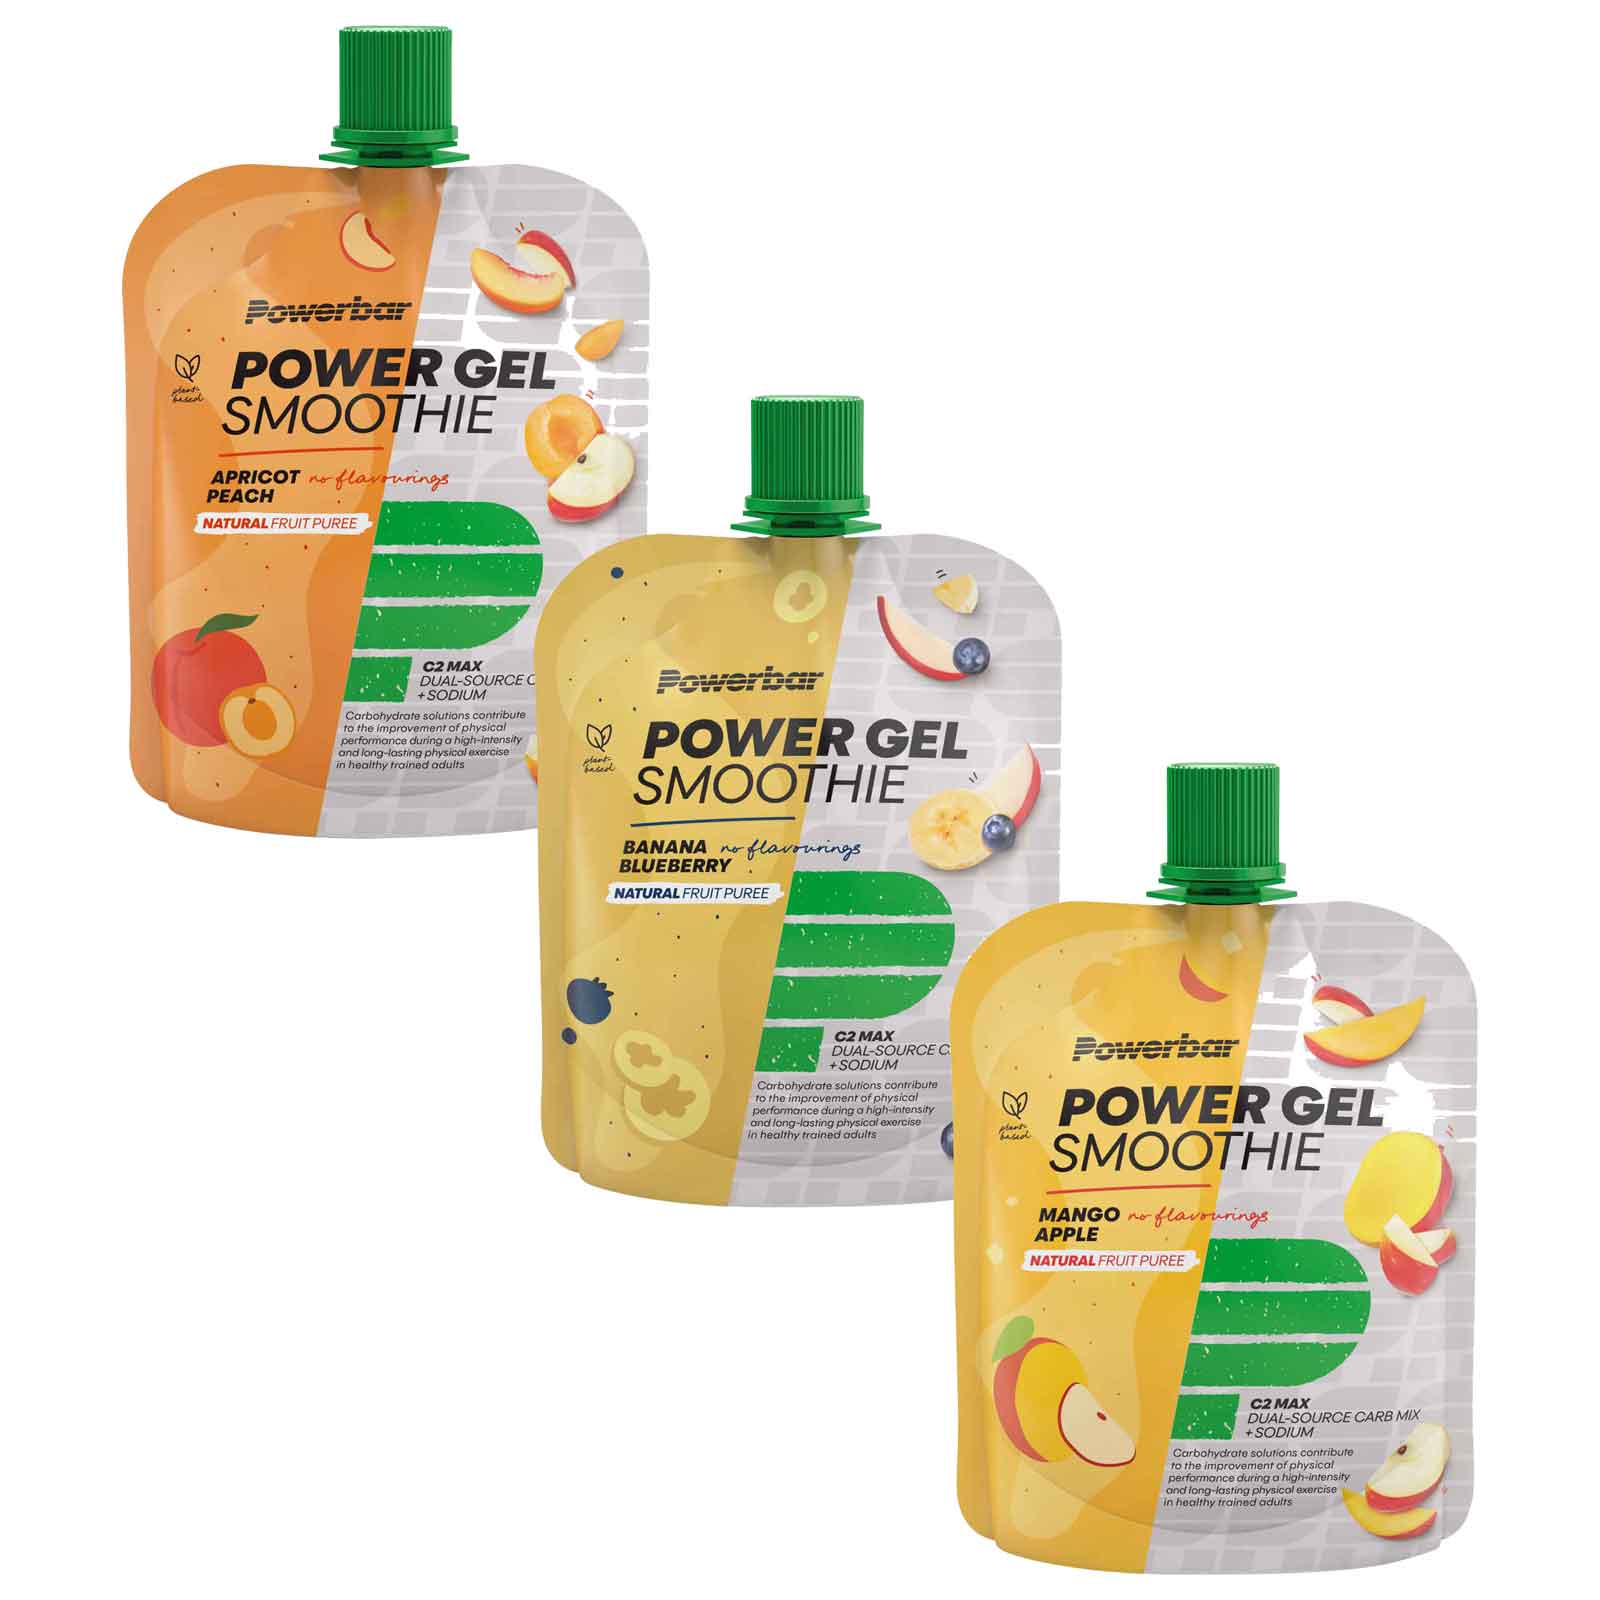 Produktbild von Powerbar PowerGel Smoothie - Fruchtpüree mit Kohlenhydraten - 90g